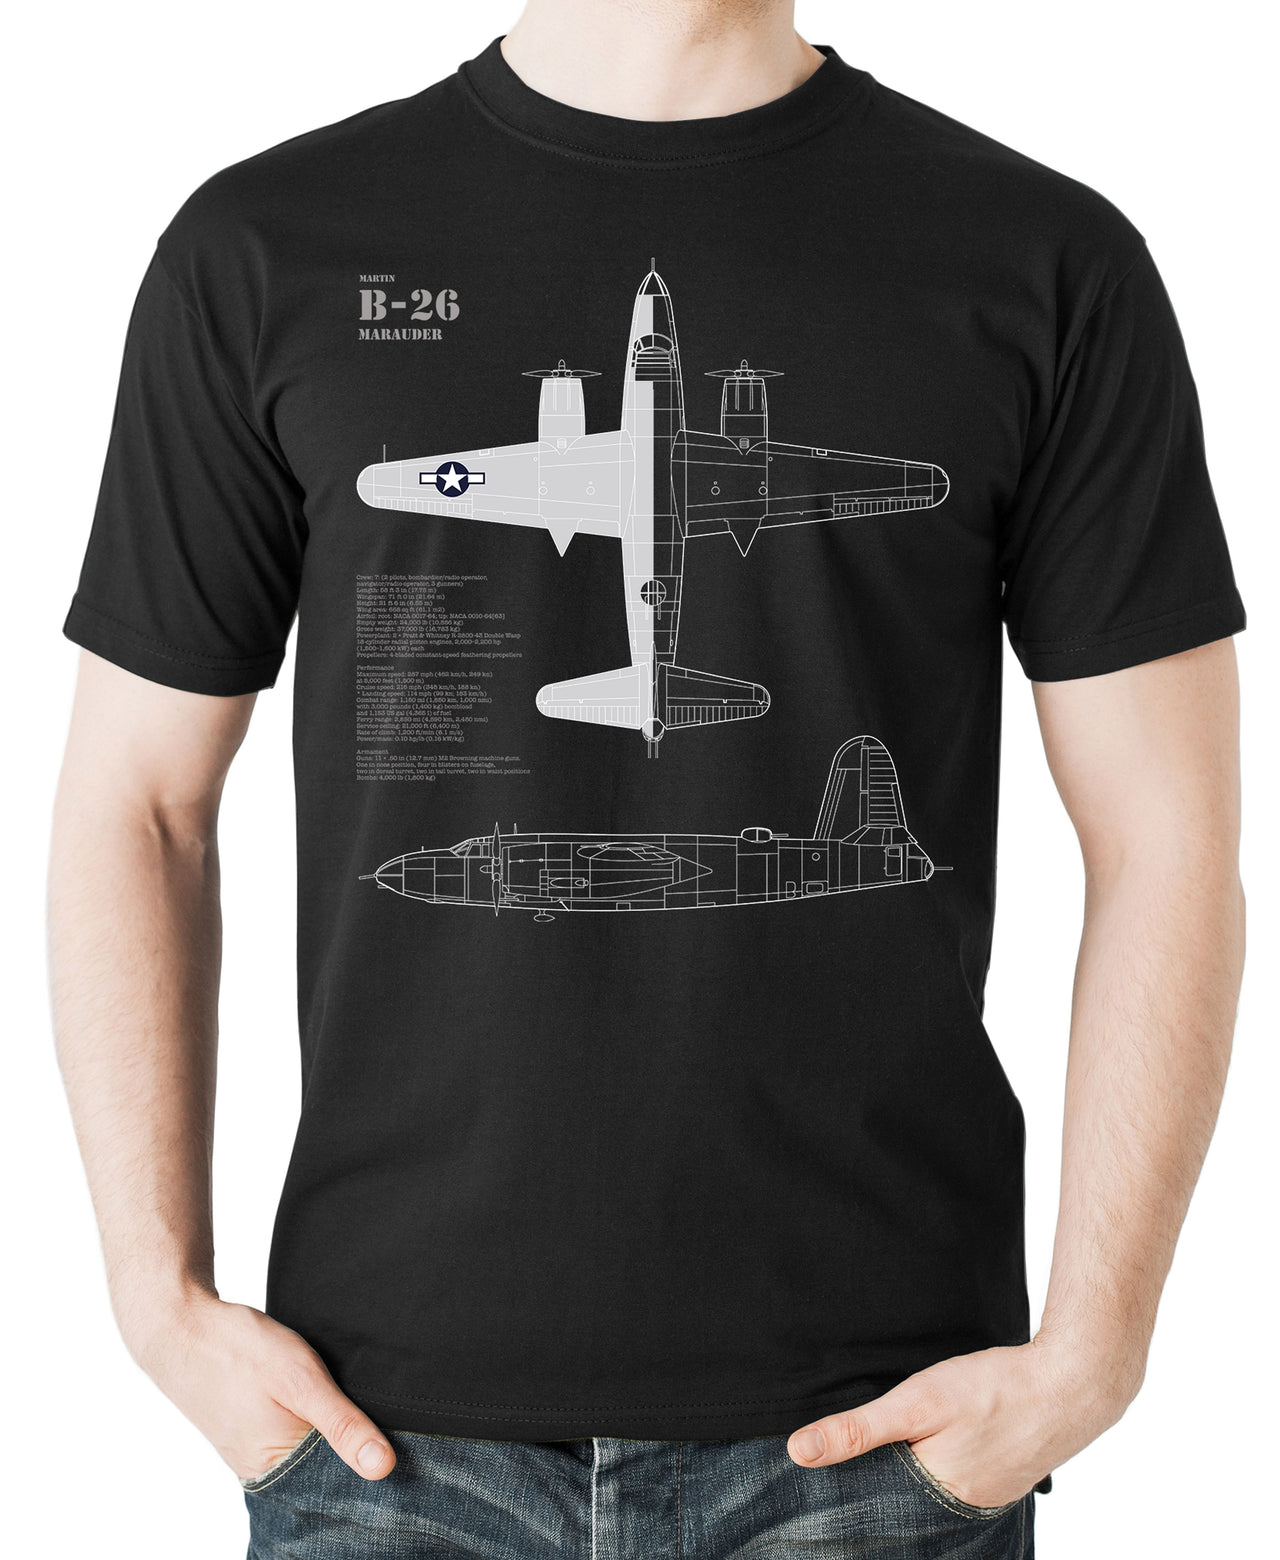 B-26 Marauder - T-shirt